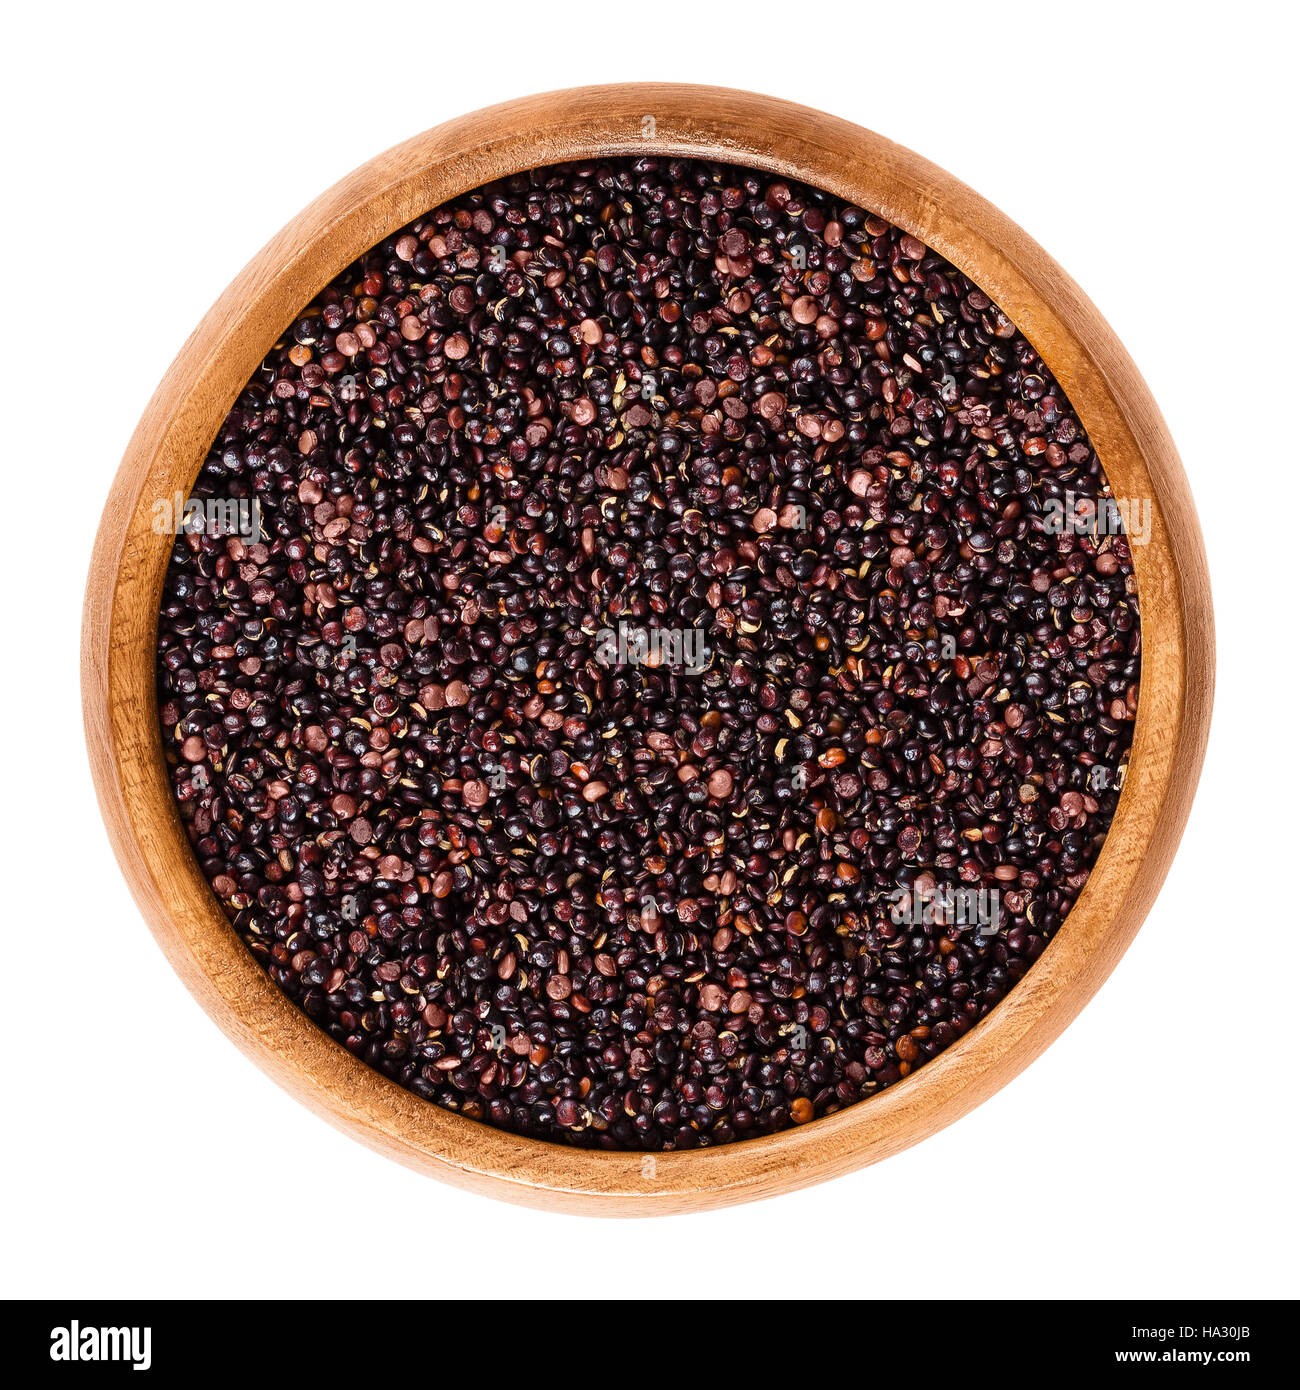 Dans les graines de quinoa noir bol en bois. Fruits comestibles de la récolte du grain dans le Chenopodium quinoa Amarante famille est un pseudocereal. Banque D'Images